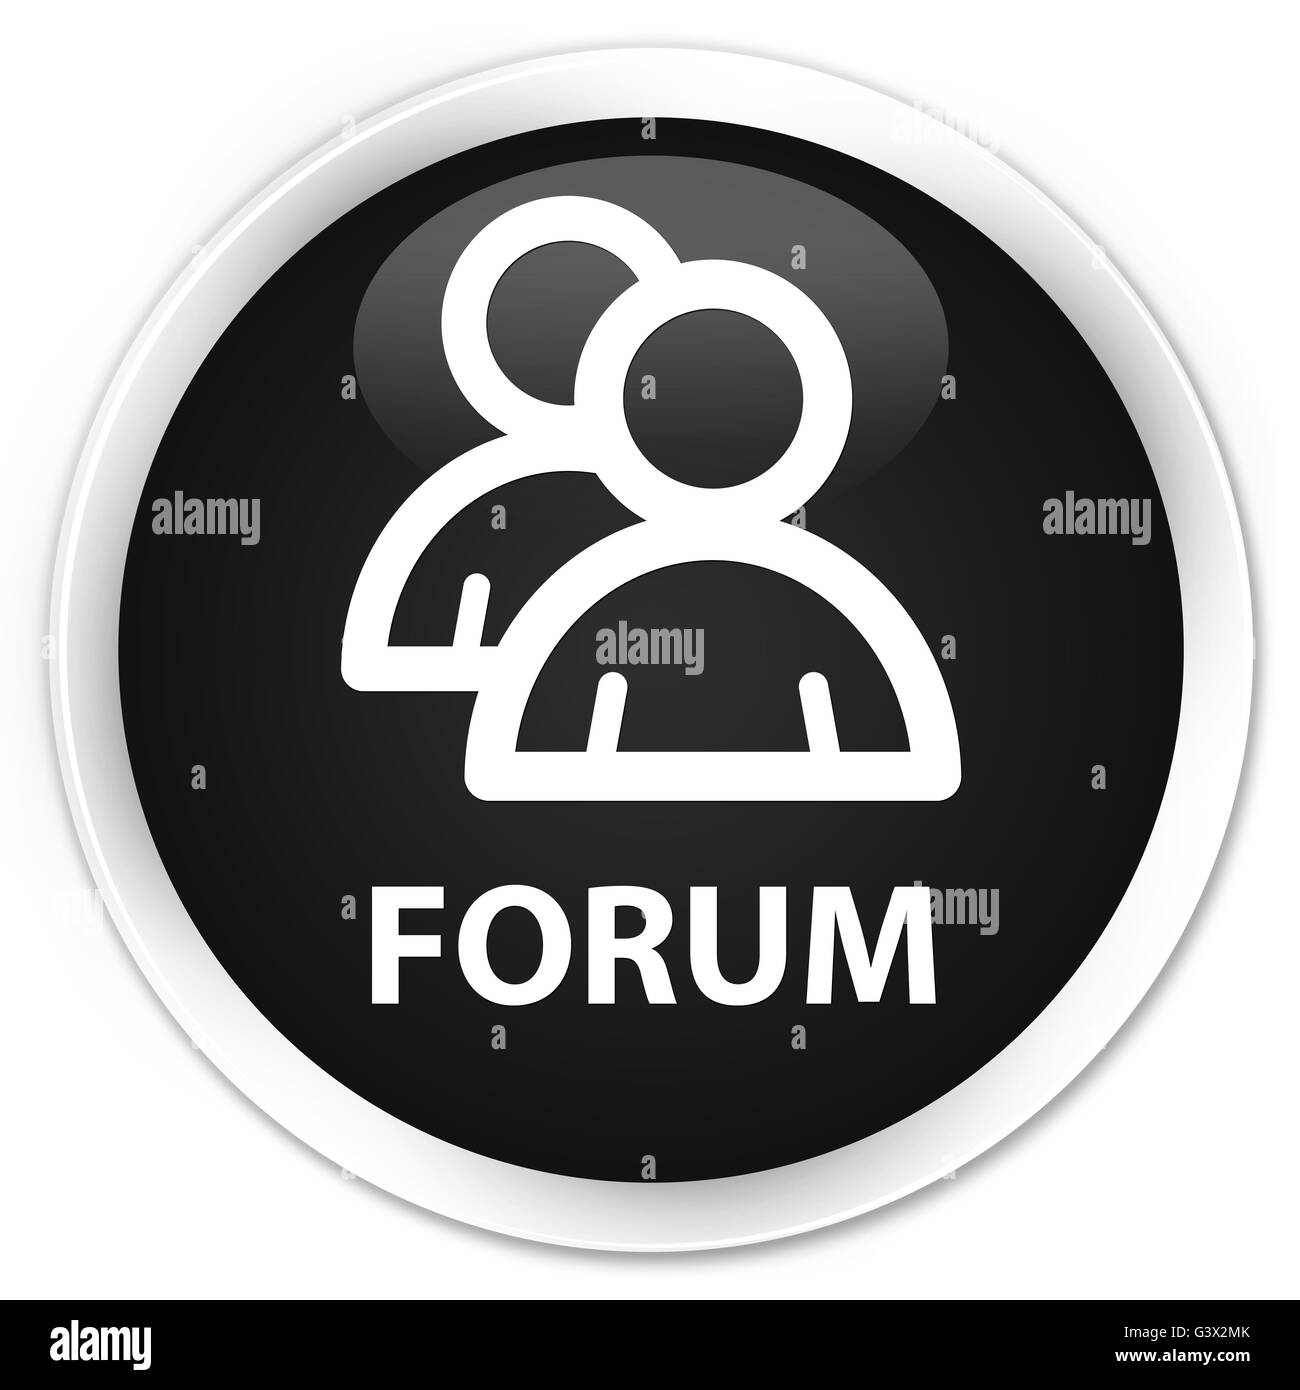 Icône de groupe (Forum) isolé sur le bouton rond noir premium abstract illustration Banque D'Images